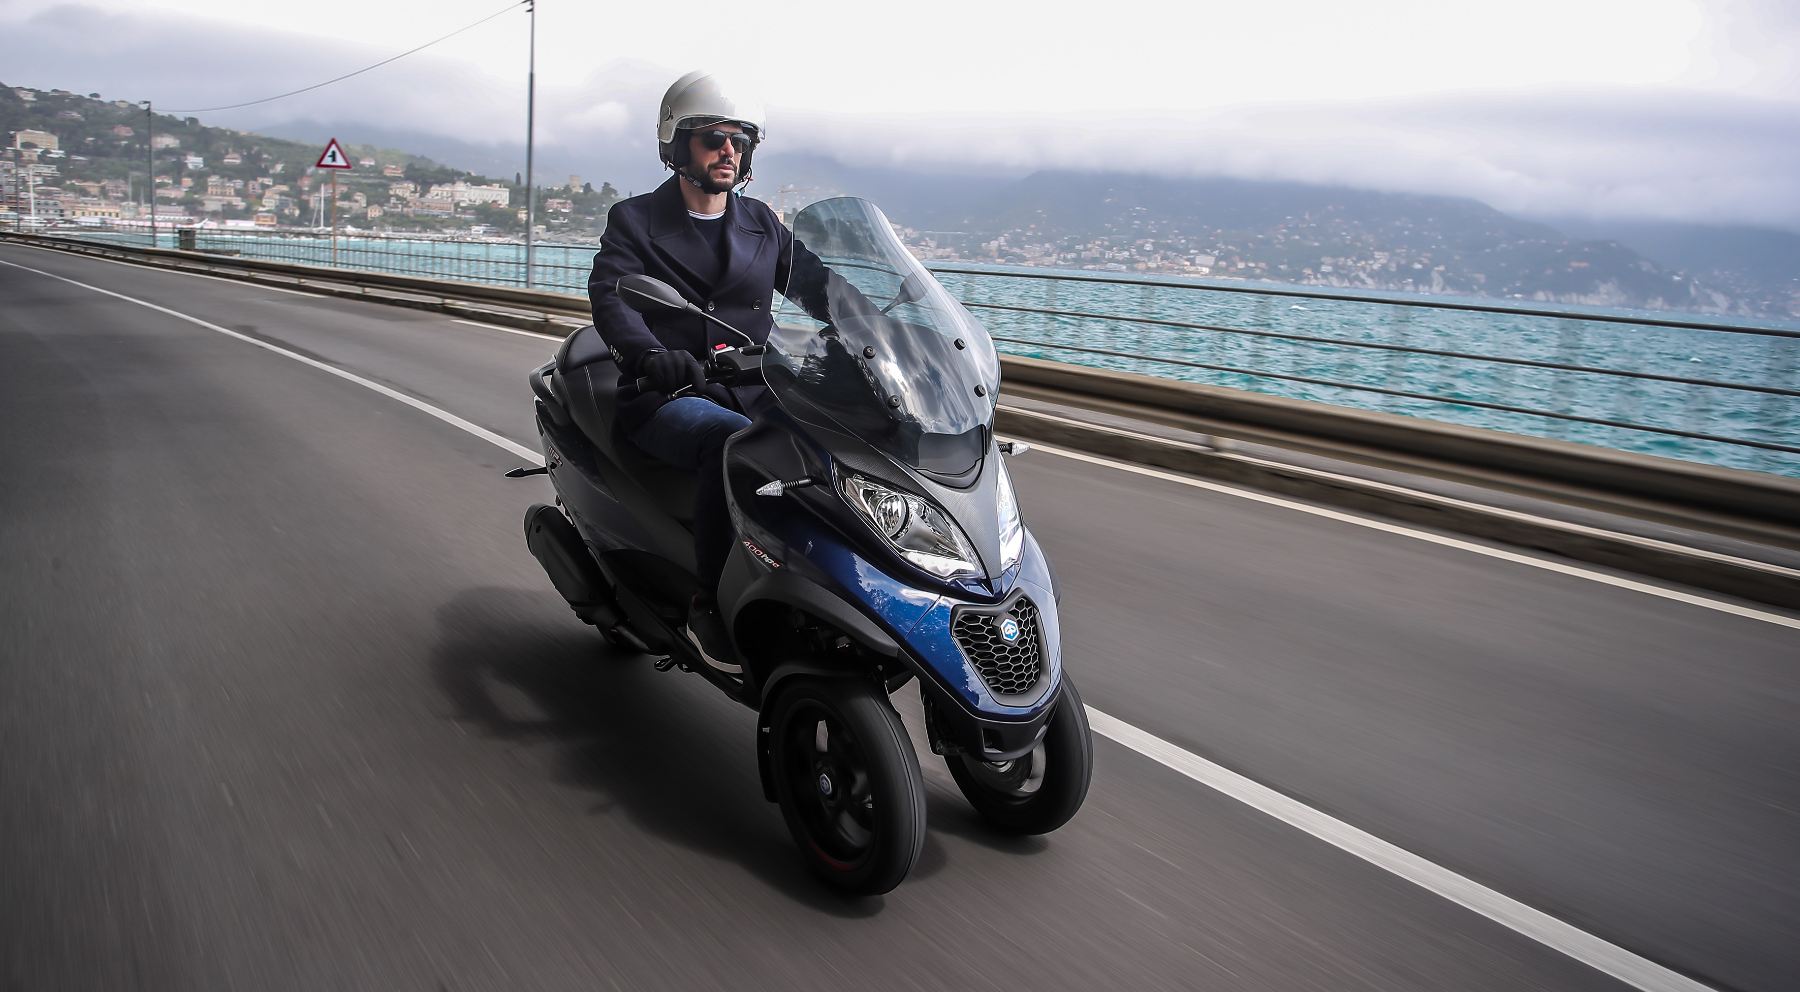 Piaggio trabaja en un airbag integrado para motocicletas